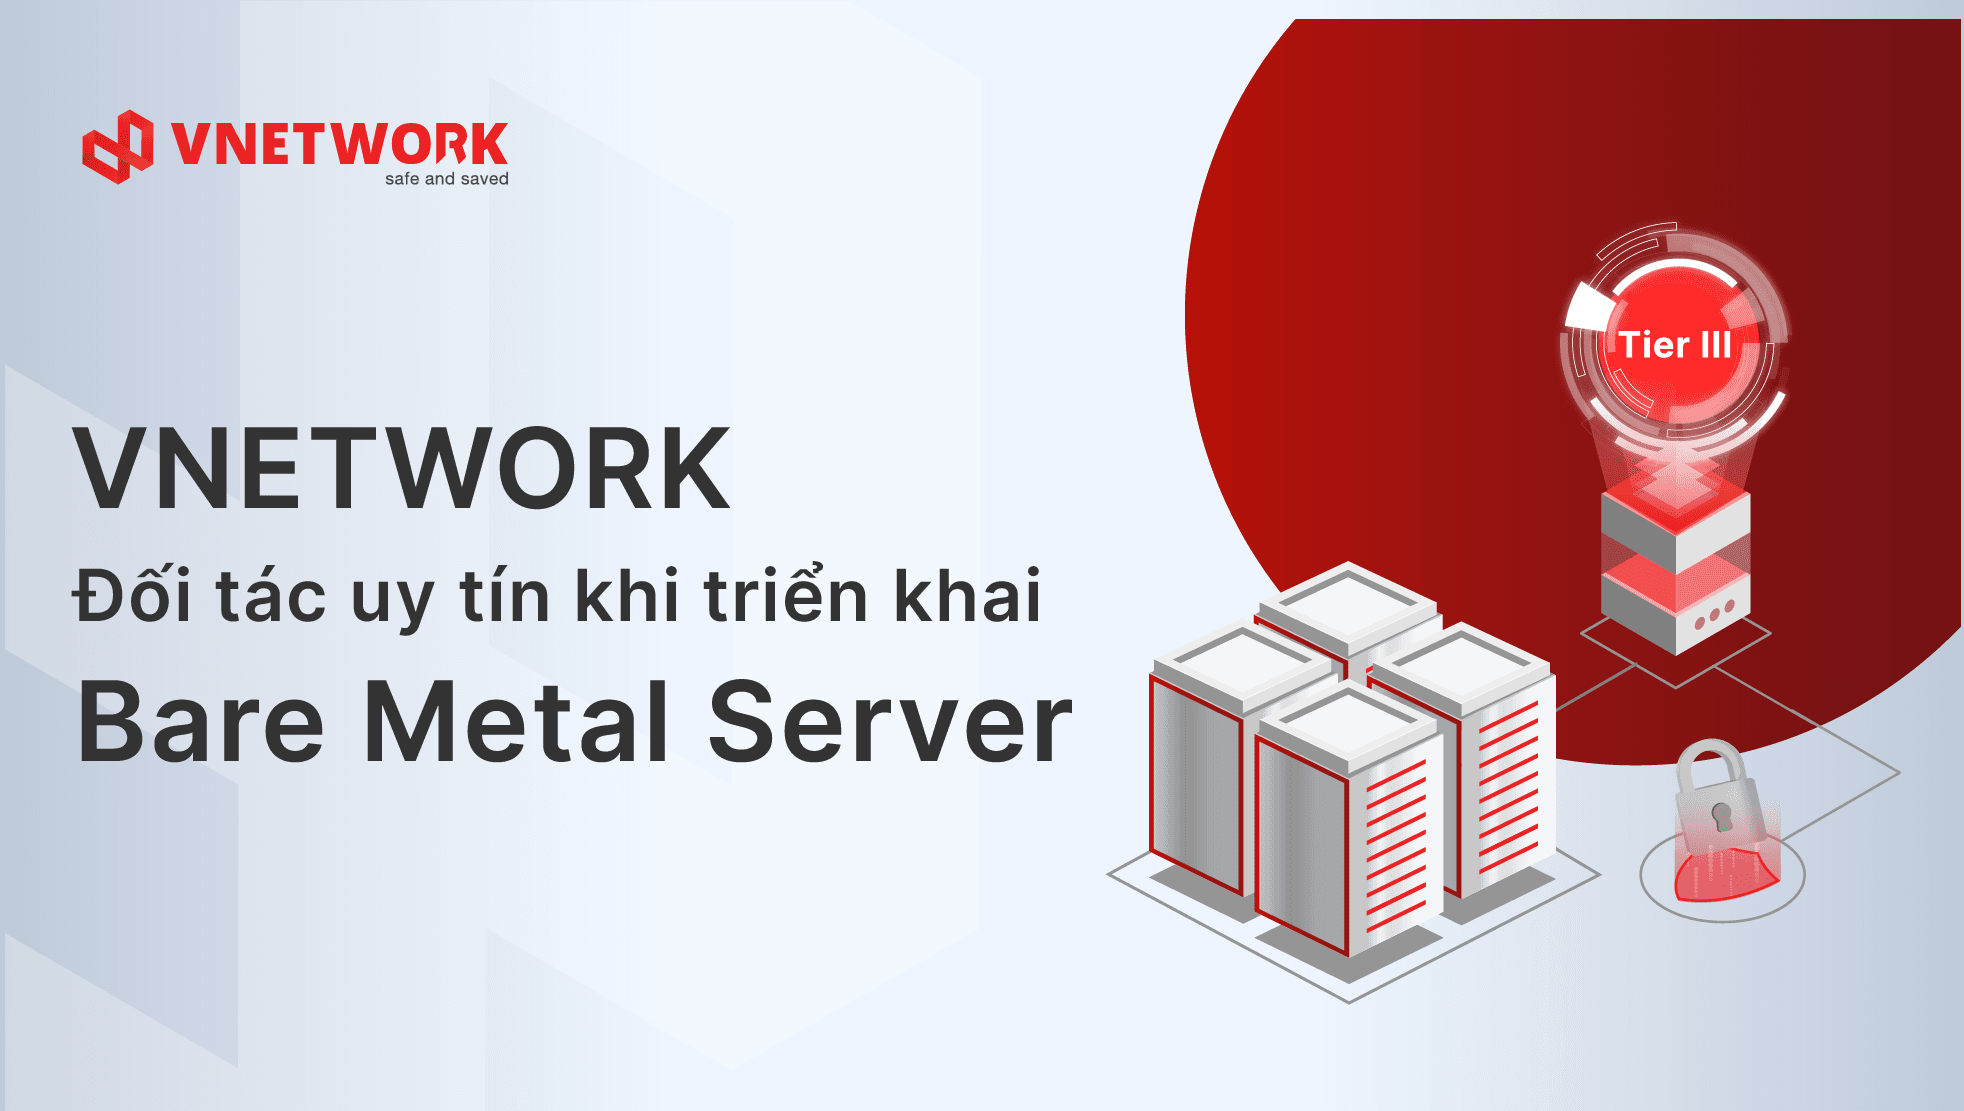 Bare Metal Server của VNETWORK nhận được nhiều sự tin dùng